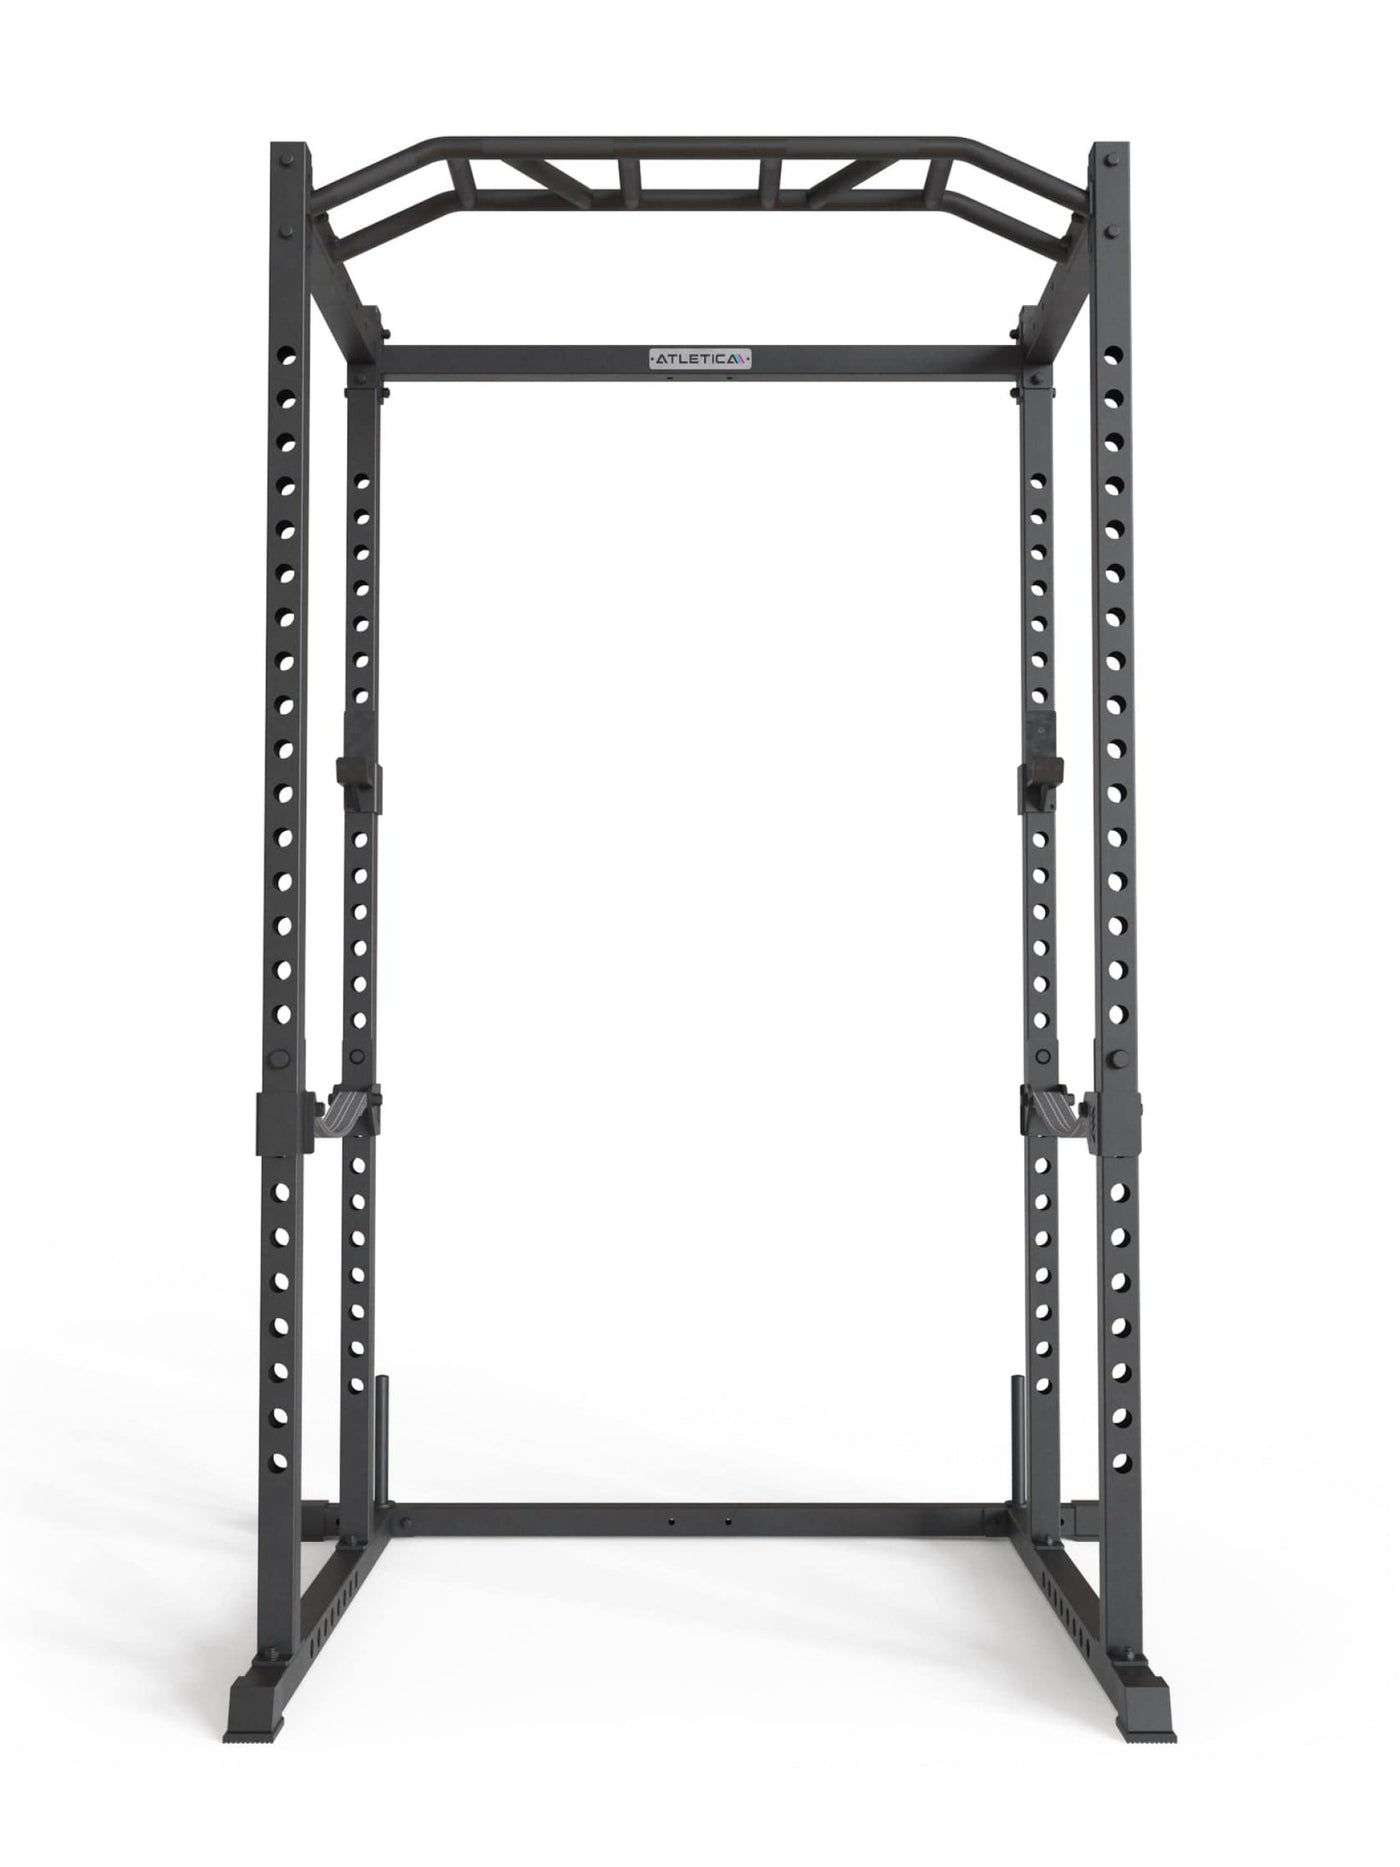 Power Rack R5 Base Käfig: ideal für Fitnesstraining mit Hantelbank und Gewichten,  #size_195-cm